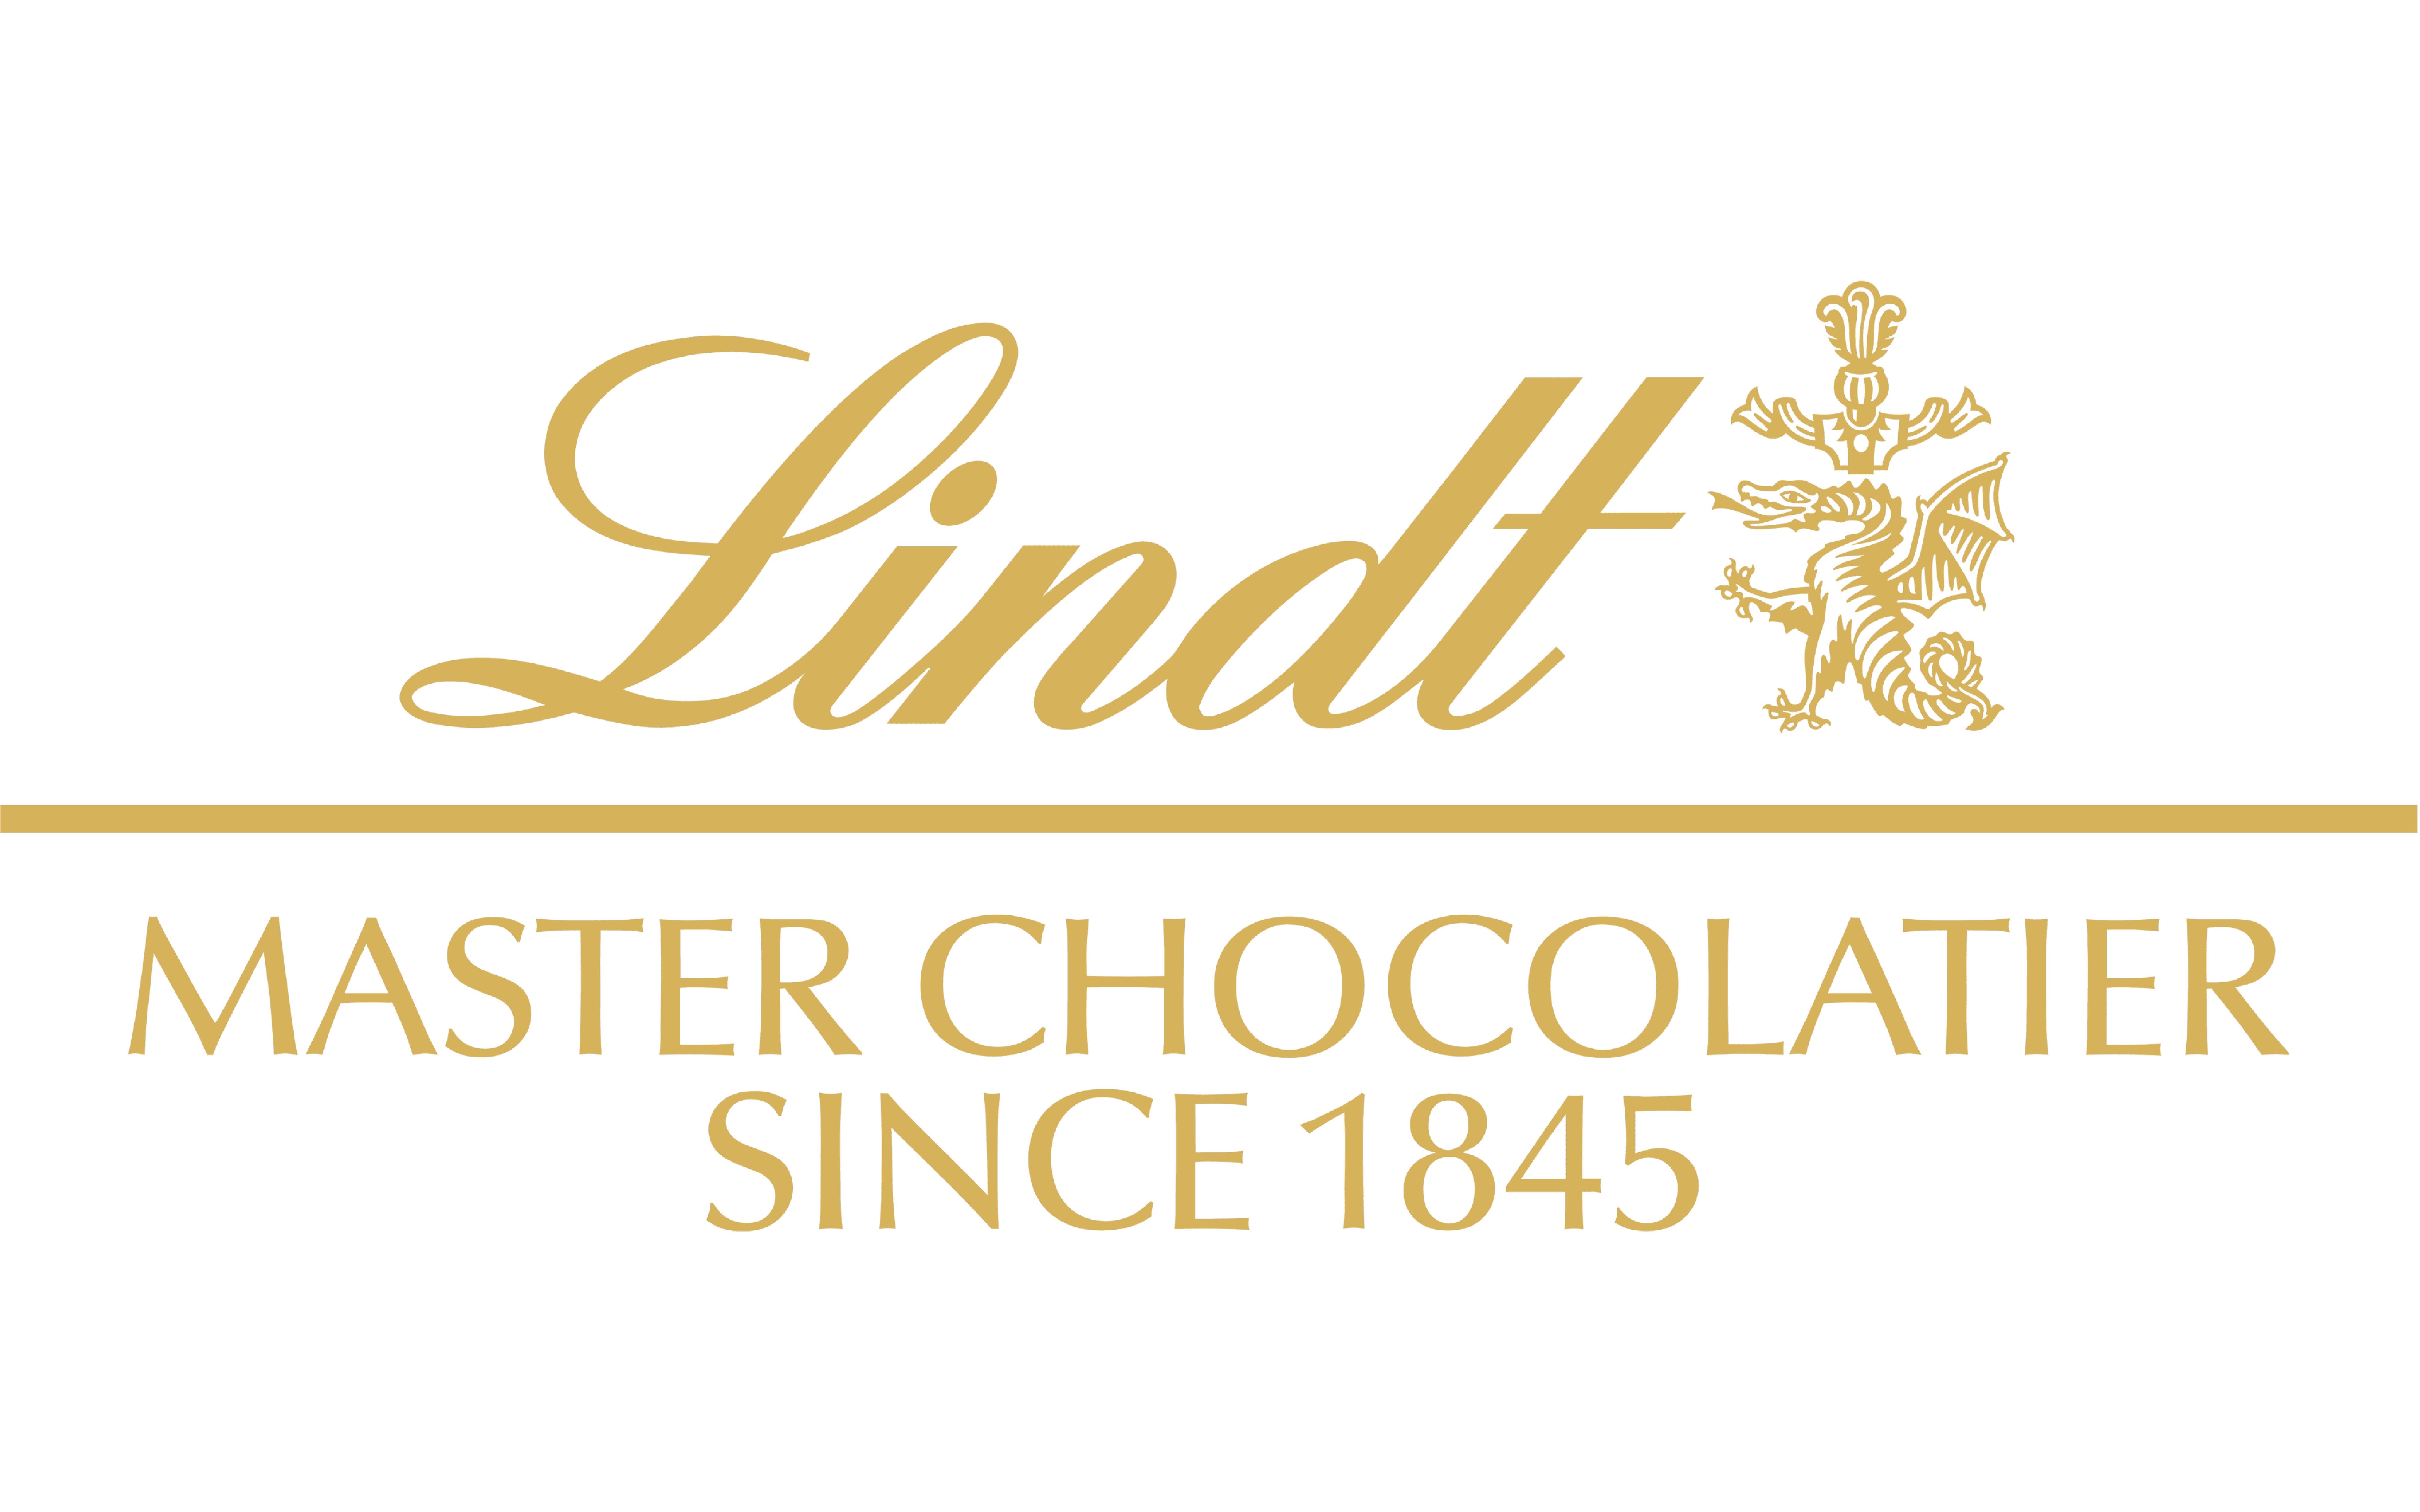 Lindt & Sprüngli es marca lider mundial en chocolate premium y muy conocida por sus clásicos de chocolate. El corazón de los chocolates lo conforman las habas de cacao de la más alta calidad. Con este objetivo desarrollan un programa propio para asegurar la sostenibilidad de las habas de cacao - El Programa de Agricultura Lindt & Sprüngli. 